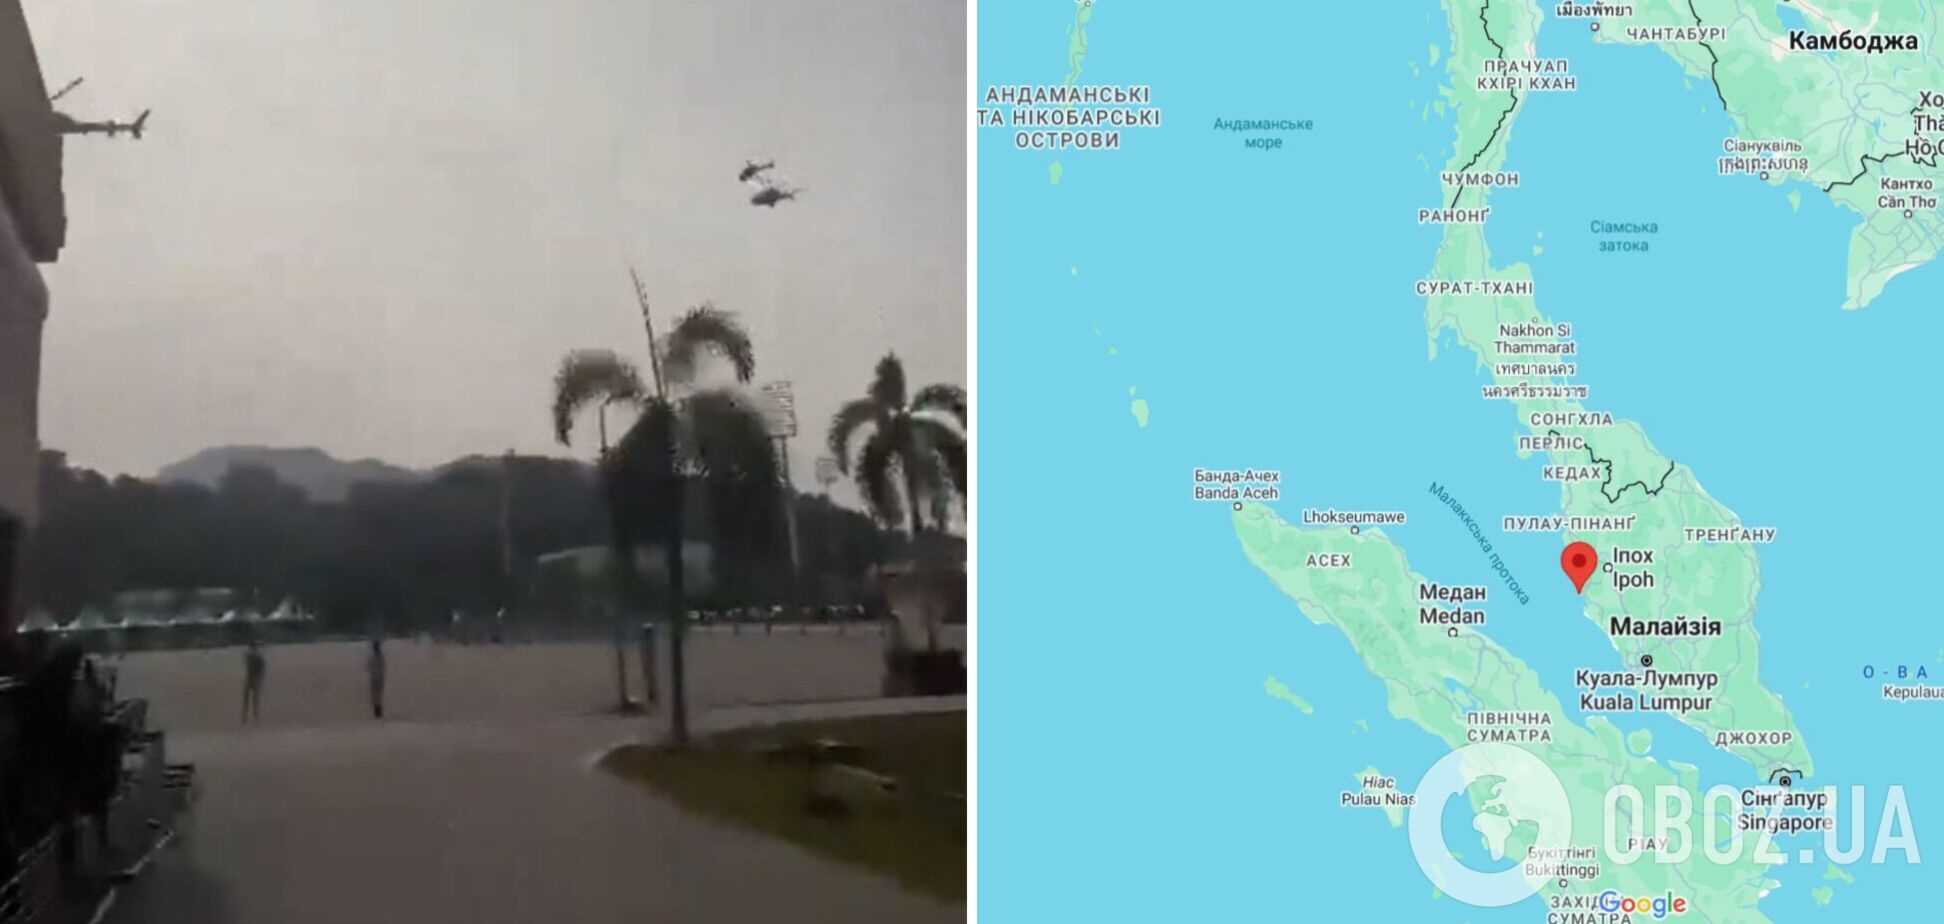 В Малайзии на репетиции военного парада столкнулись два вертолета: погибли десять человек. Видео момента крушения